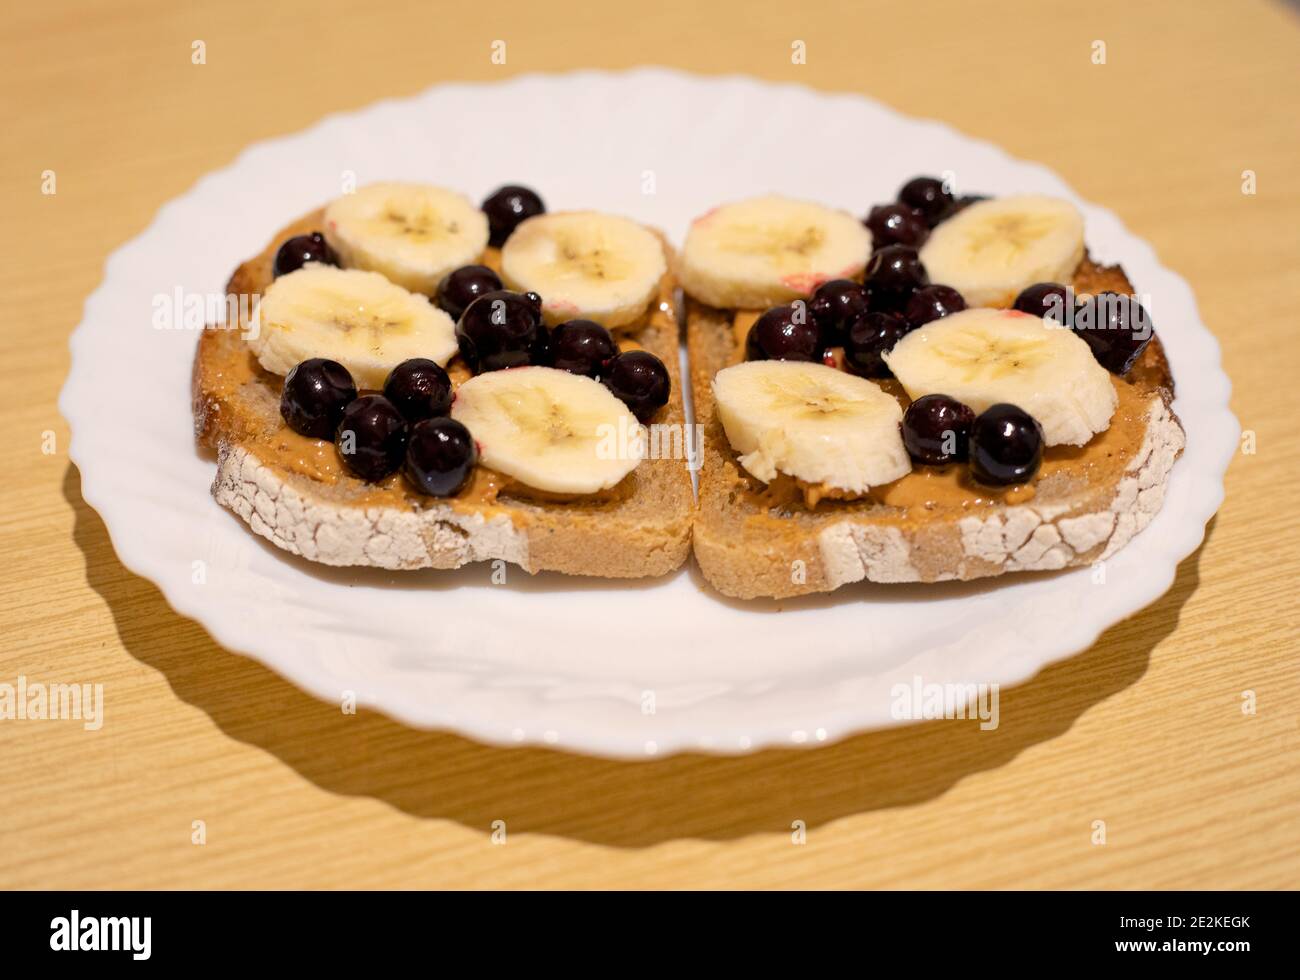 Ein gesundes Dessert zum Frühstück, Mittag- oder Abendessen dunkles Brot mit Erdnussbutter, schwarzer Johannisbeere und Bananenscheiben Stockfoto